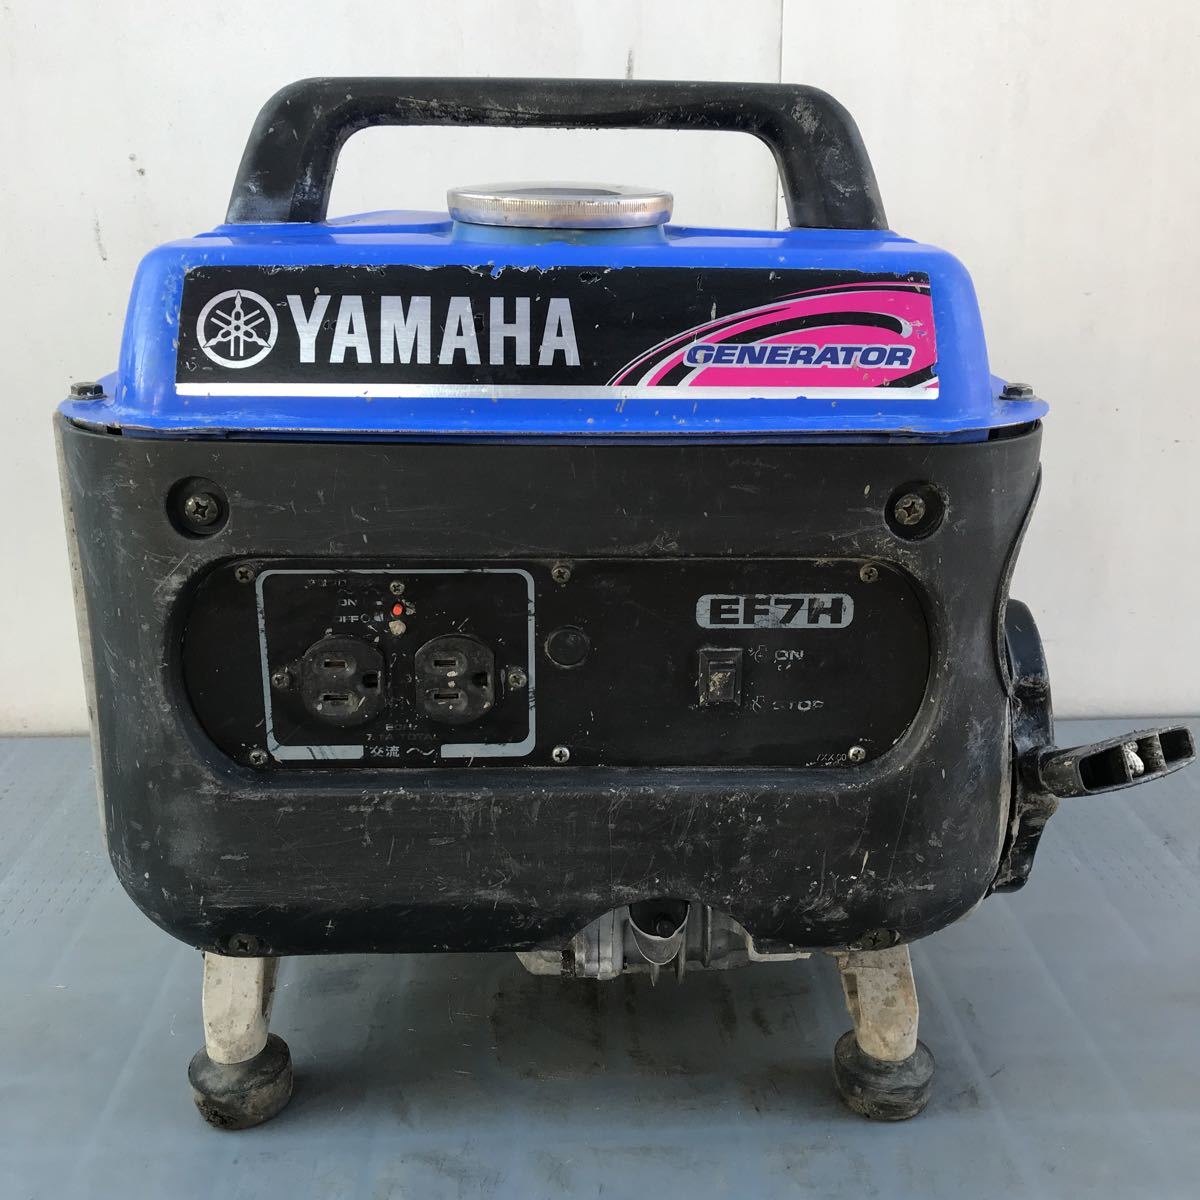 YAMAHA[EF7H] portable generator * operation OK: Real Yahoo auction